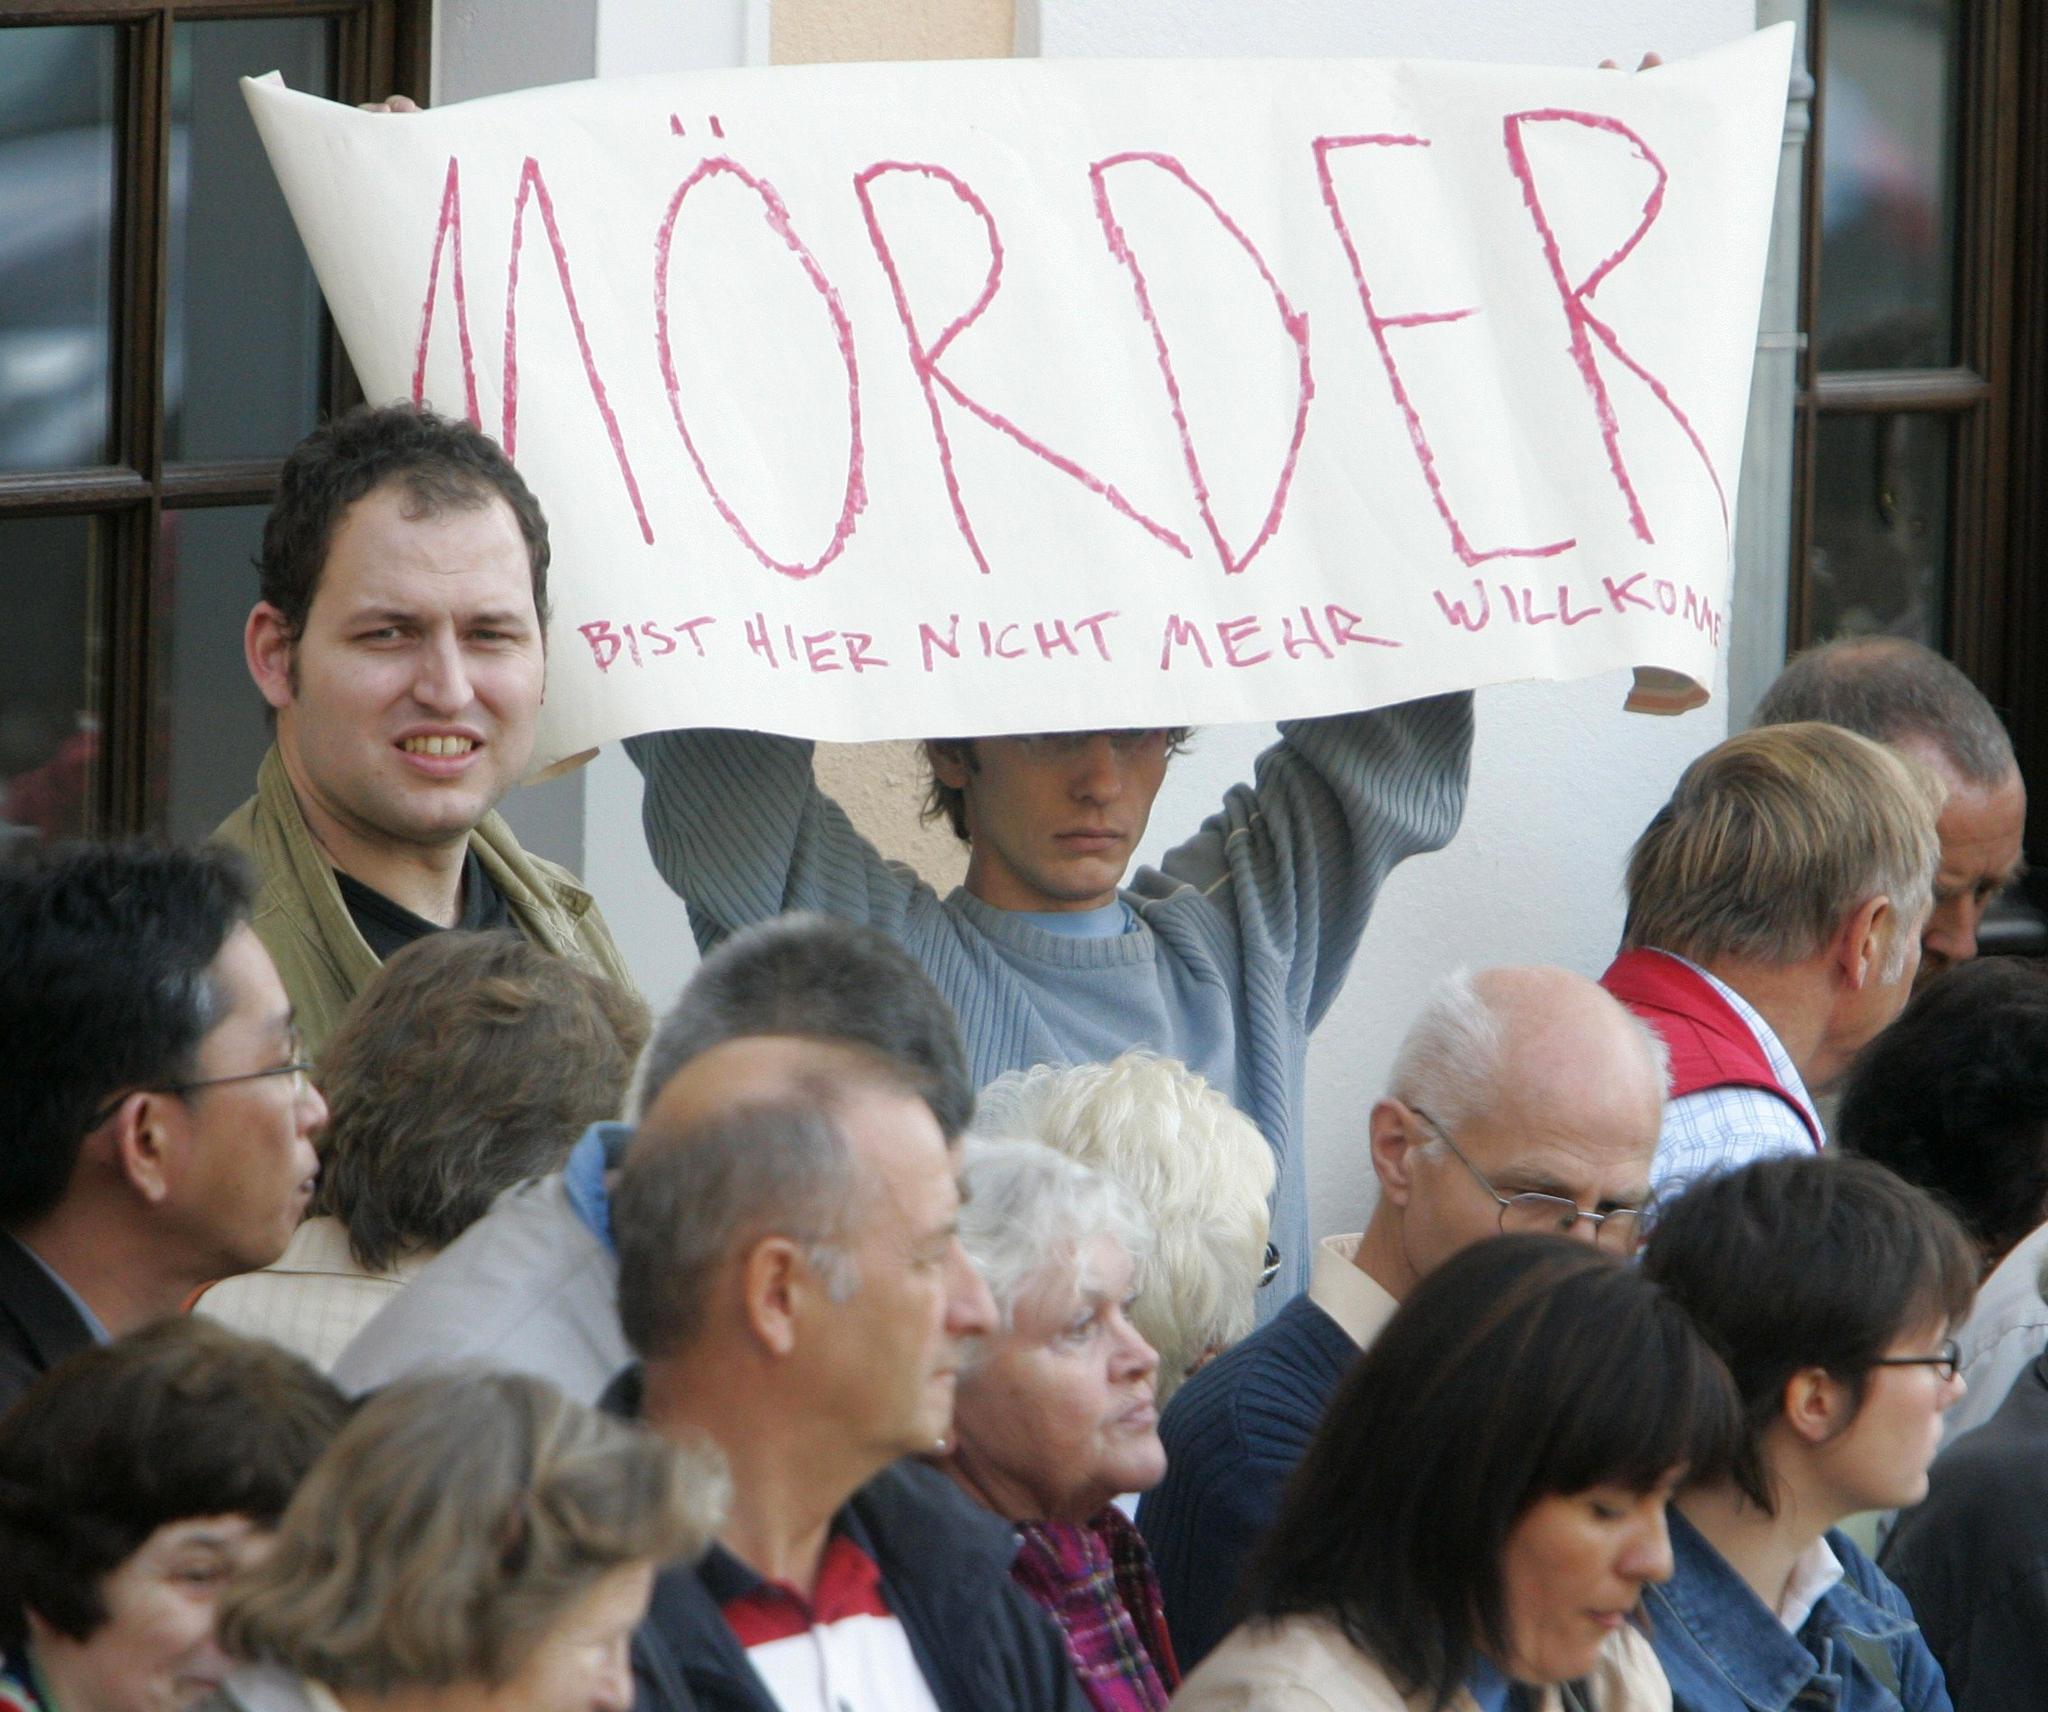 Da president Vladimir Putin besøkte Dresden i 2006, ble han blant annet møtt av disse demonstrantene som ikke hadde glemt hans tidligere opphold i byen. 